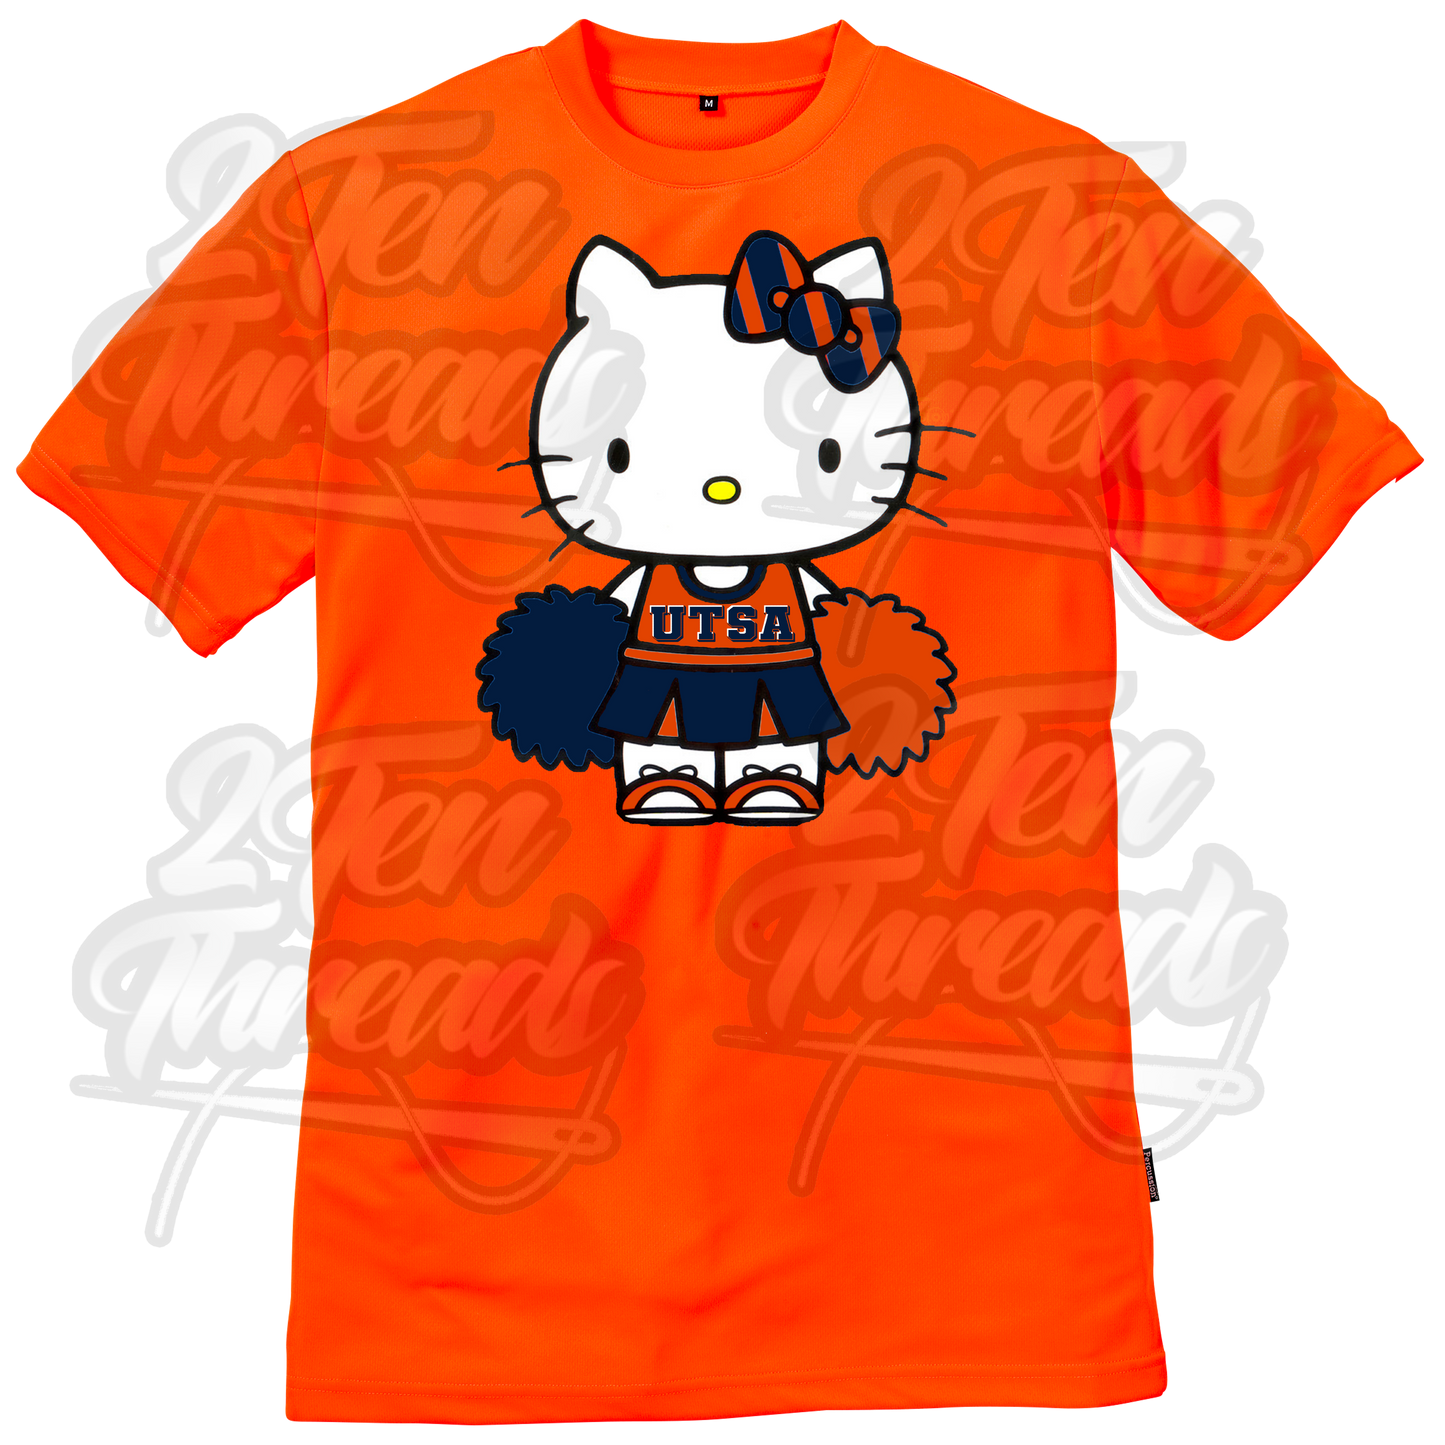 UTSA Hello Kitty Cheerleader!